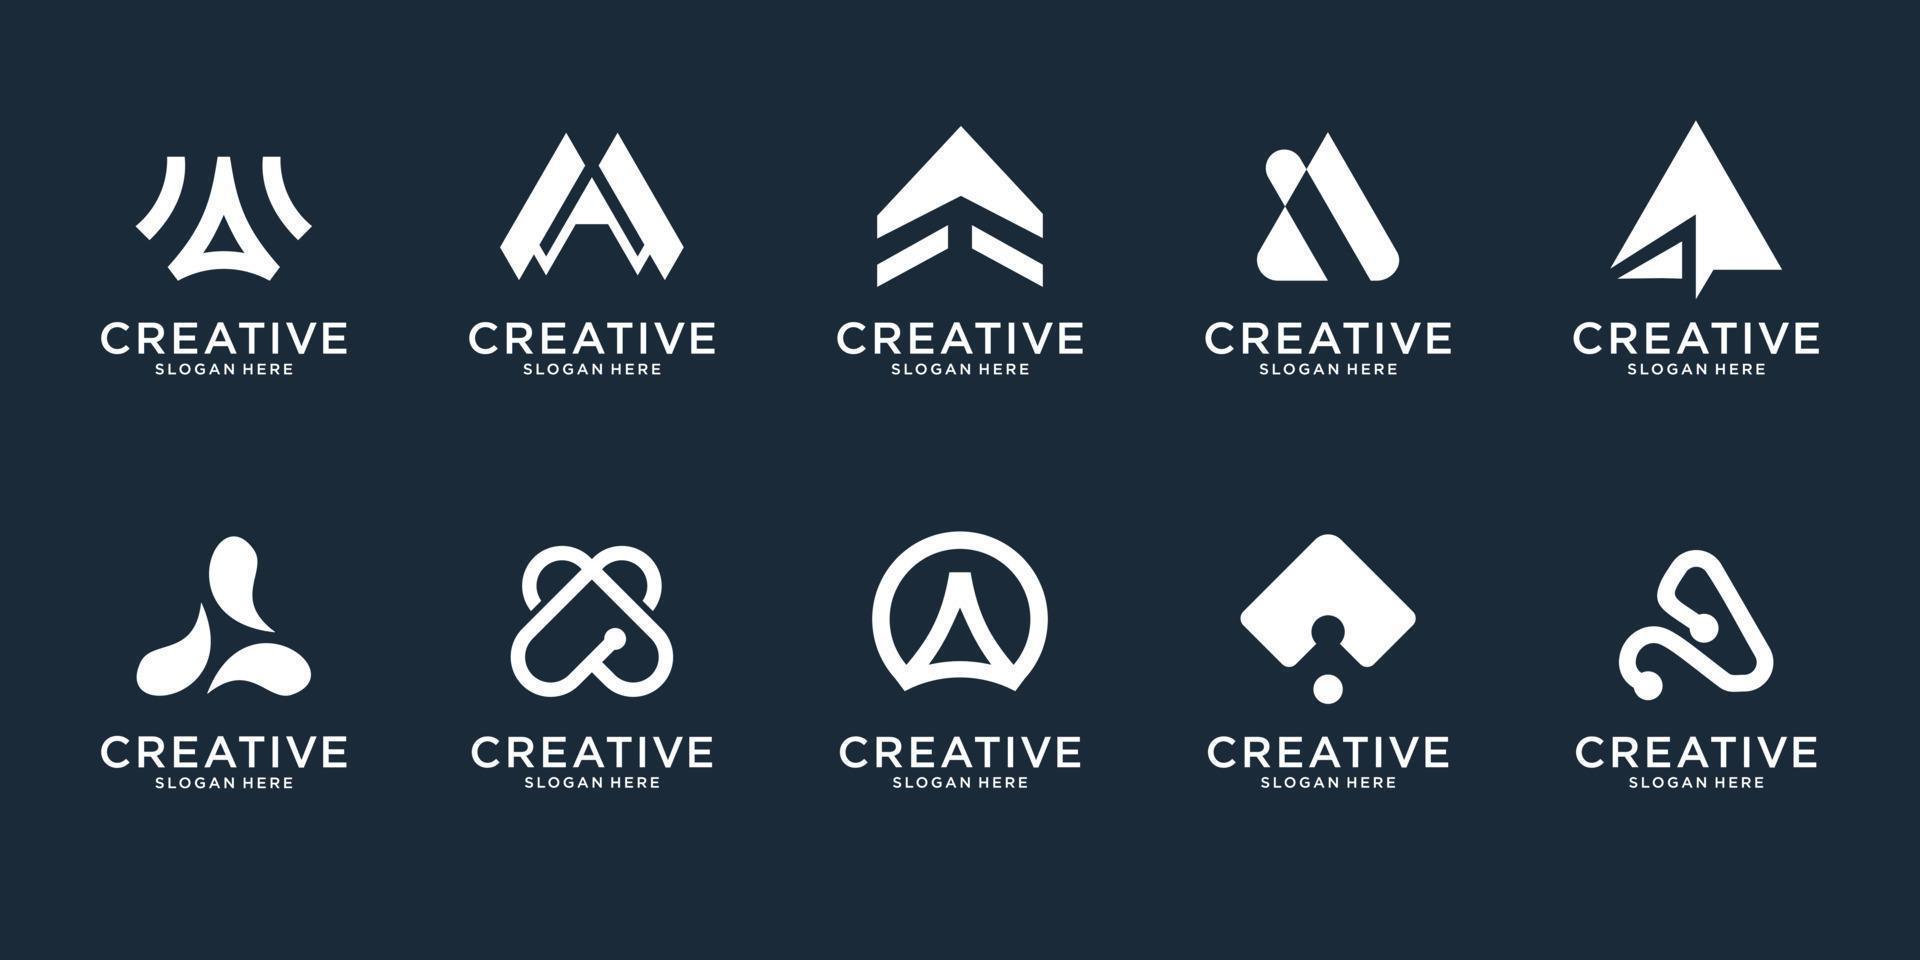 set van abstracte beginletter een logo ontwerpsjabloon. pictogrammen voor zaken van luxe, elegant, eenvoudig. premium vector